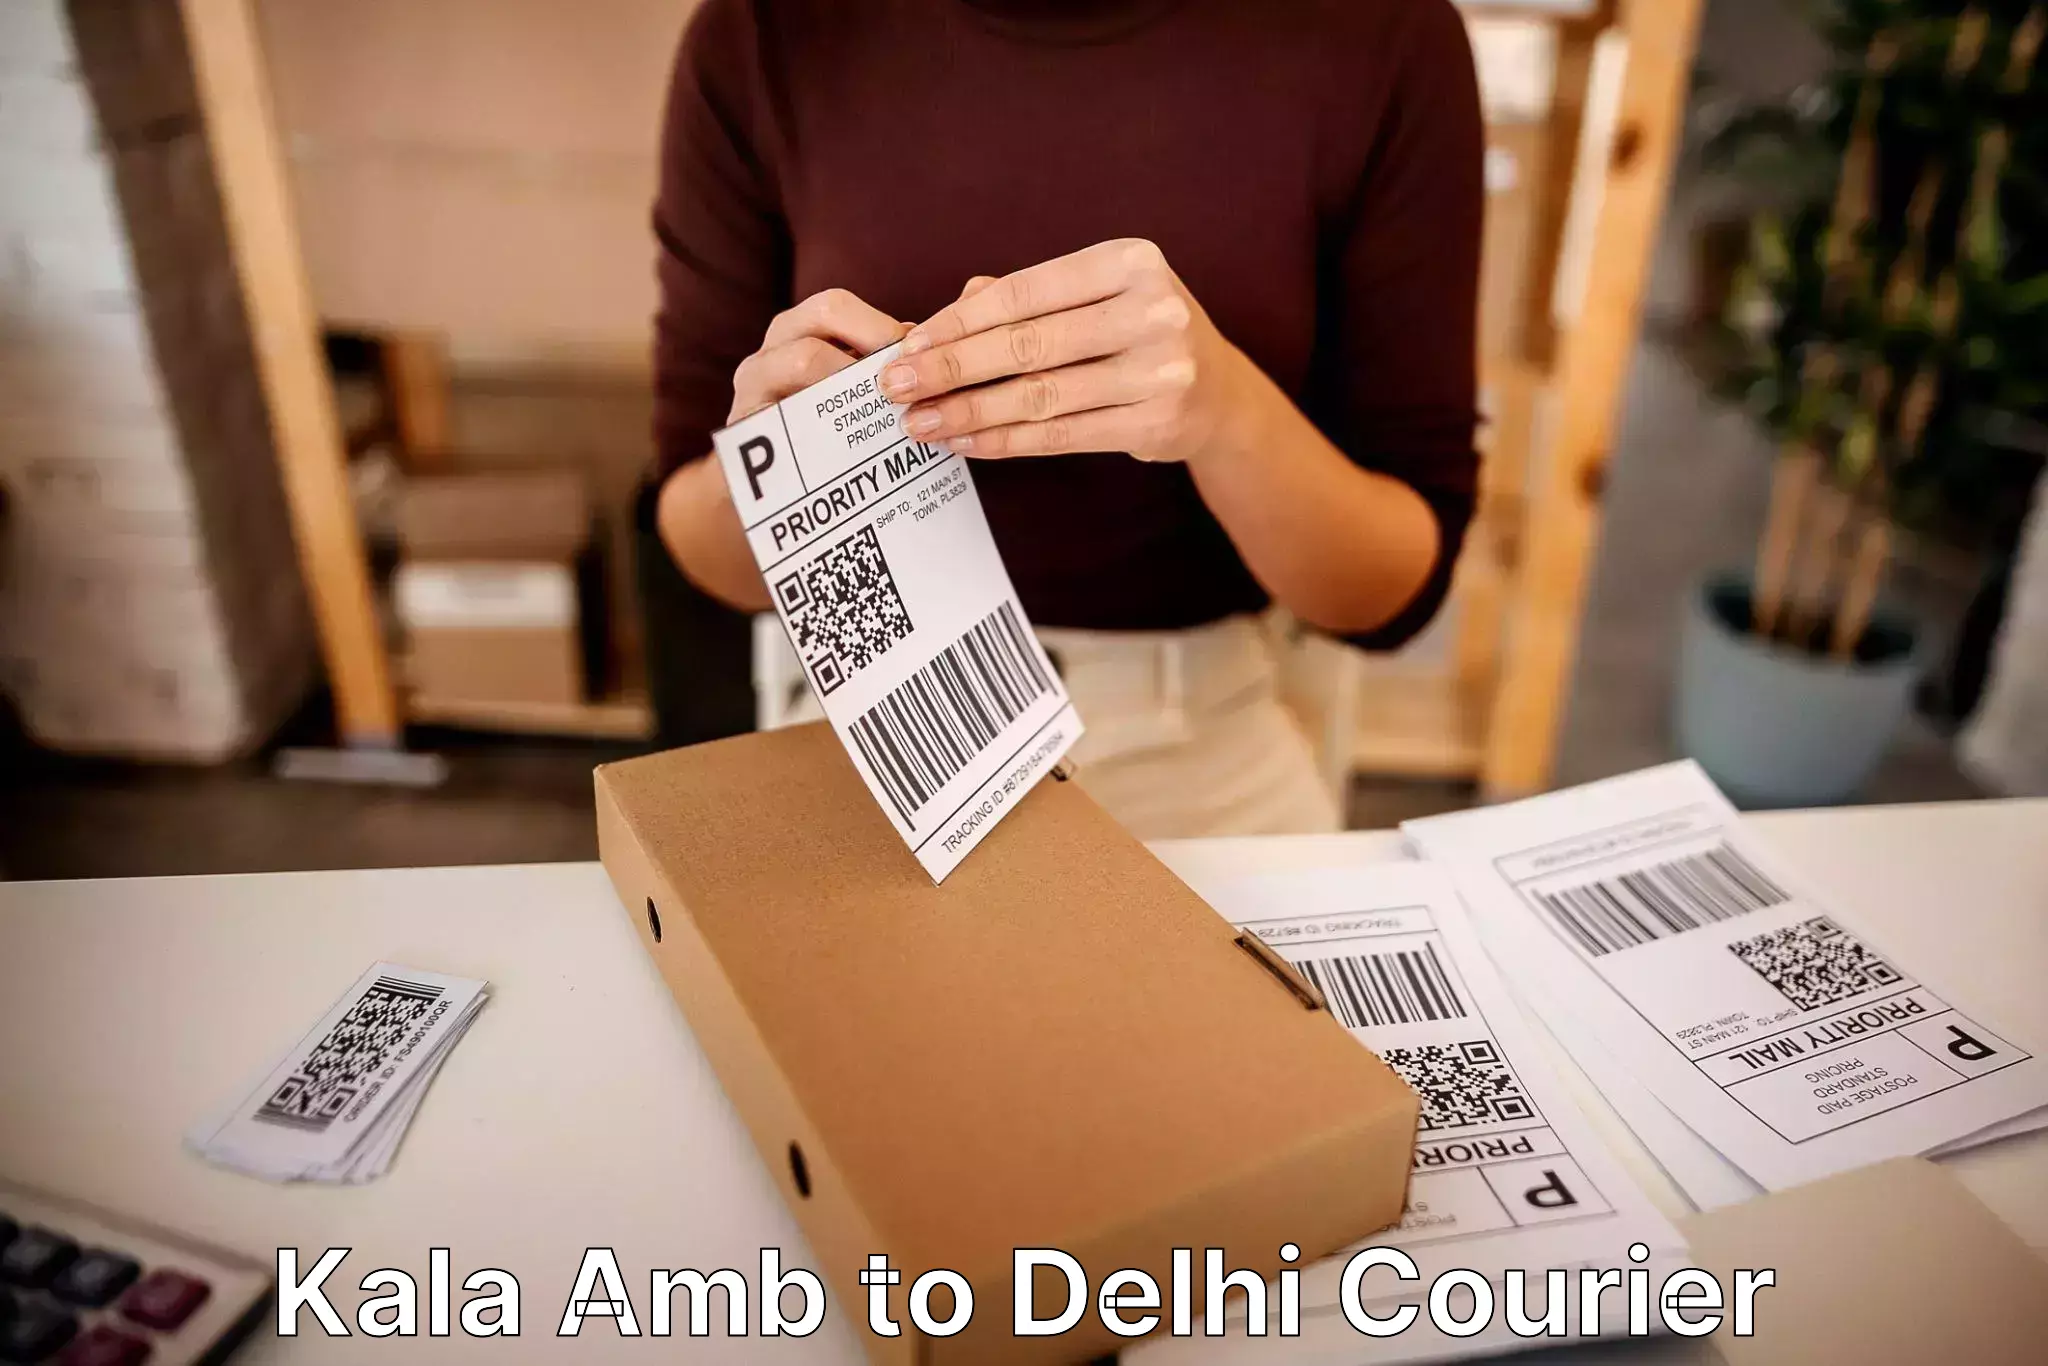 Furniture transport solutions Kala Amb to Delhi